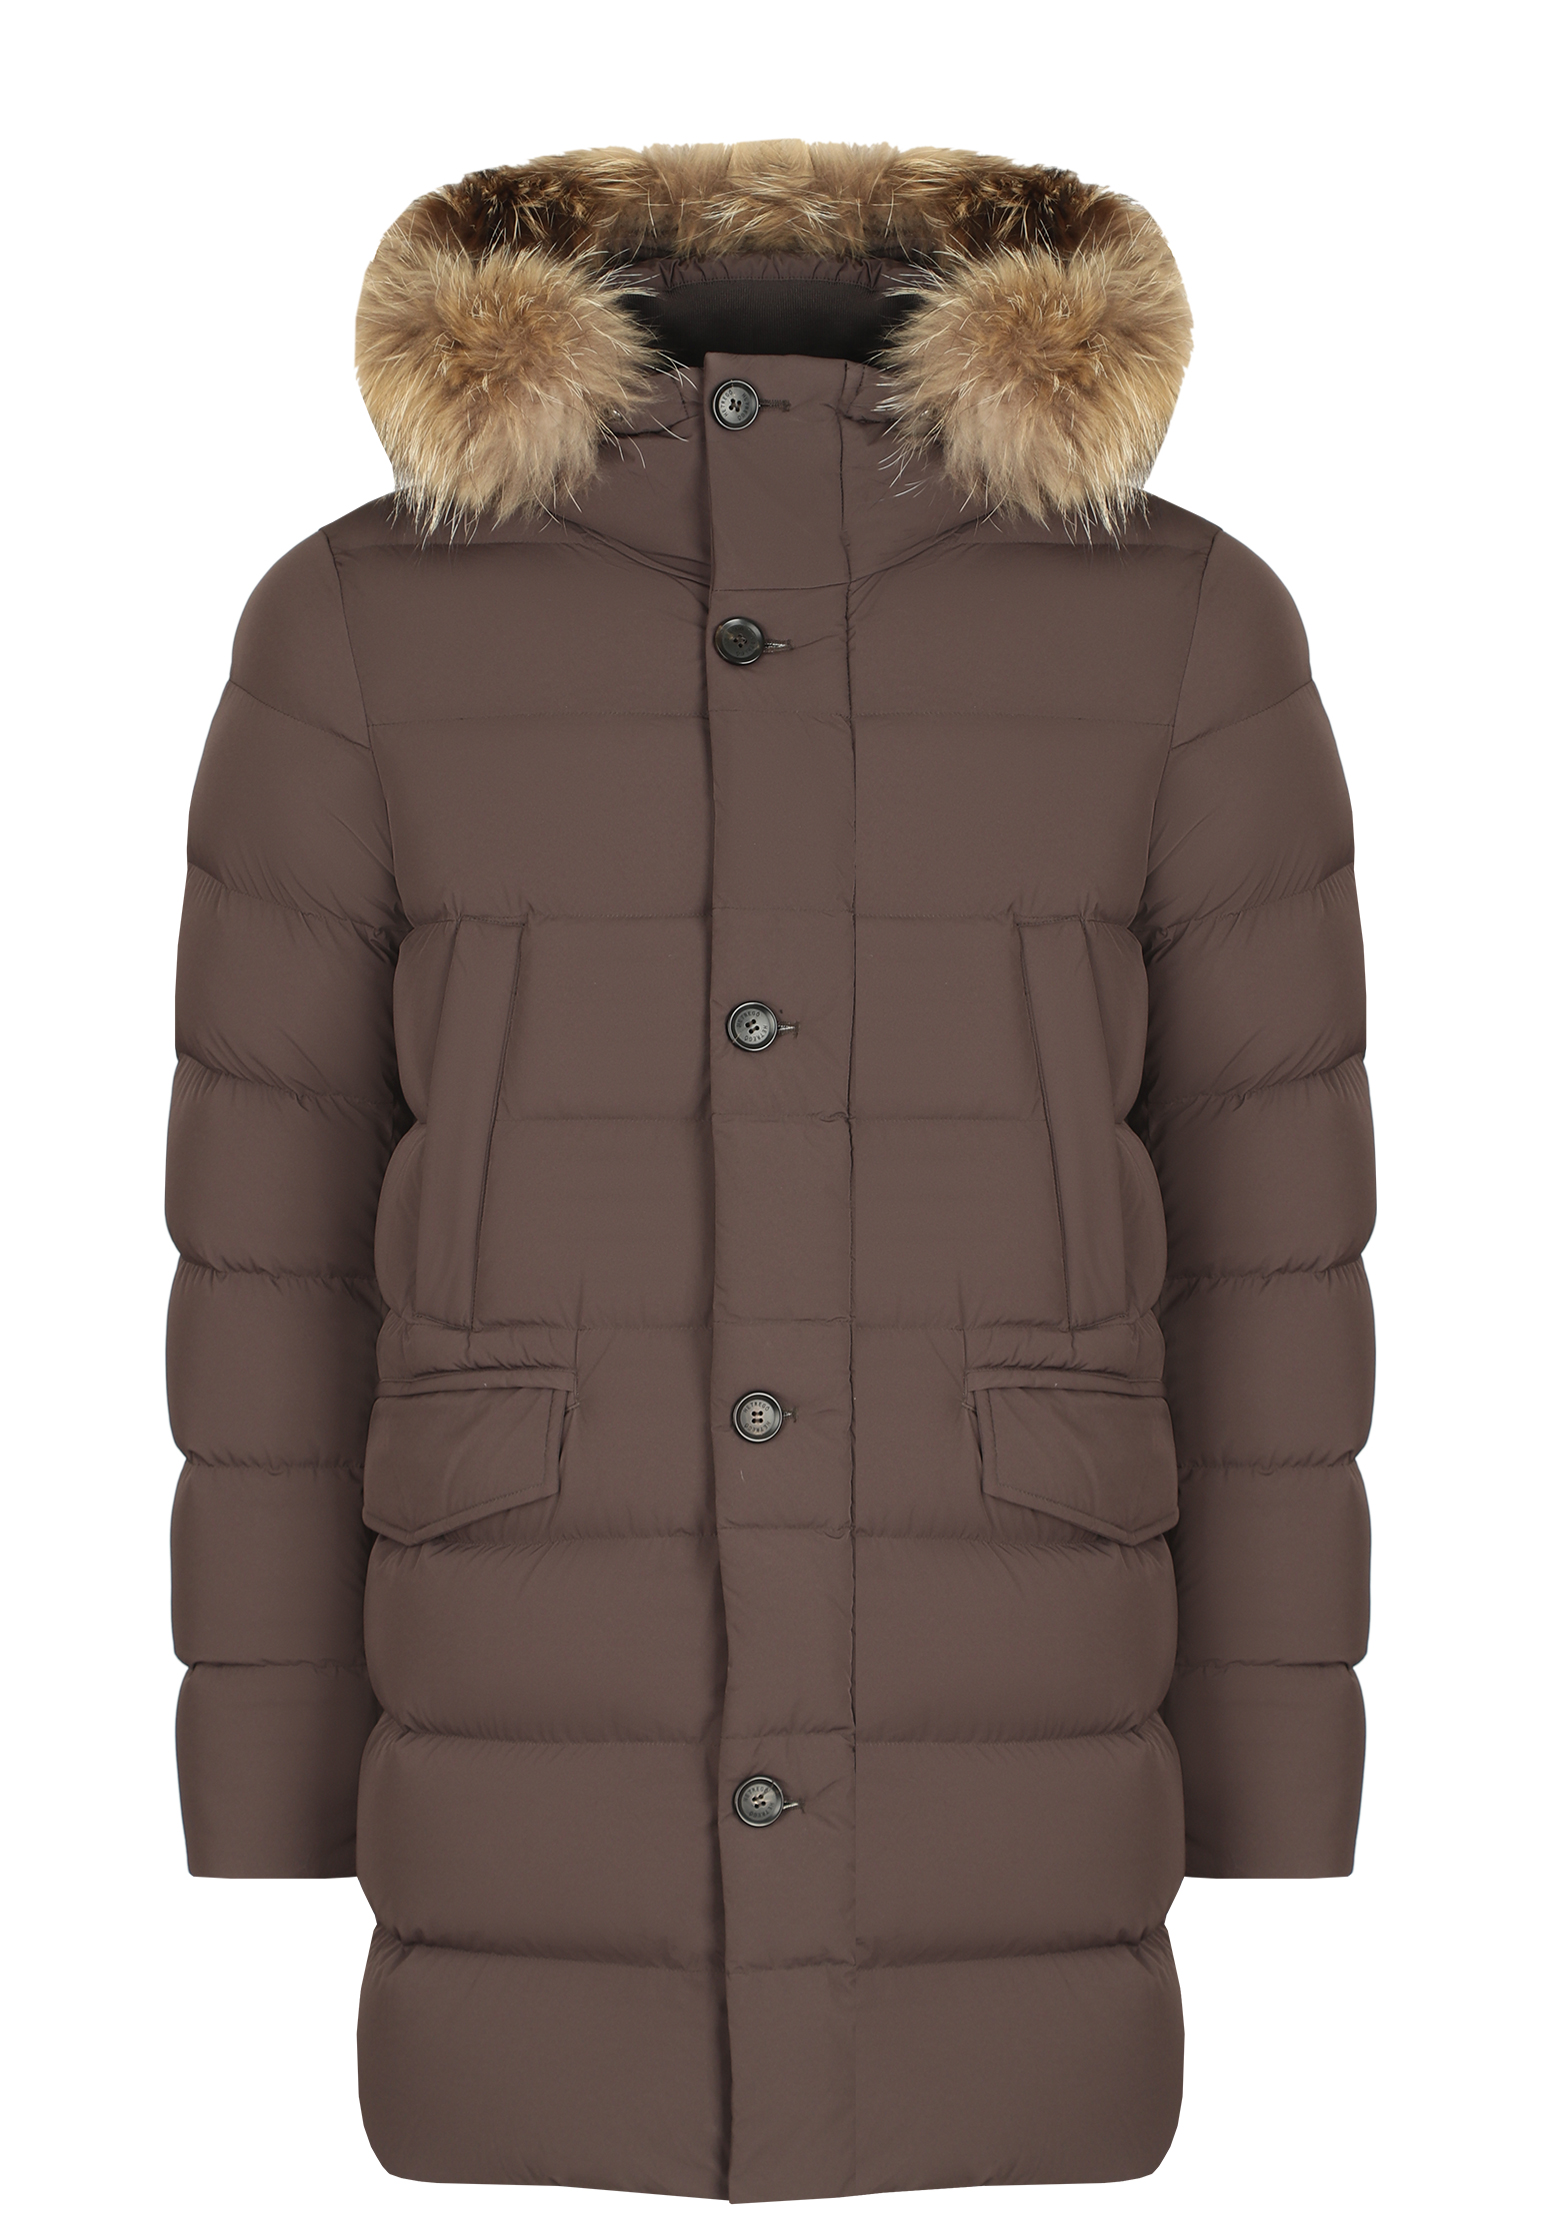 Куртка мужская HETREGO 145159 коричневая 58